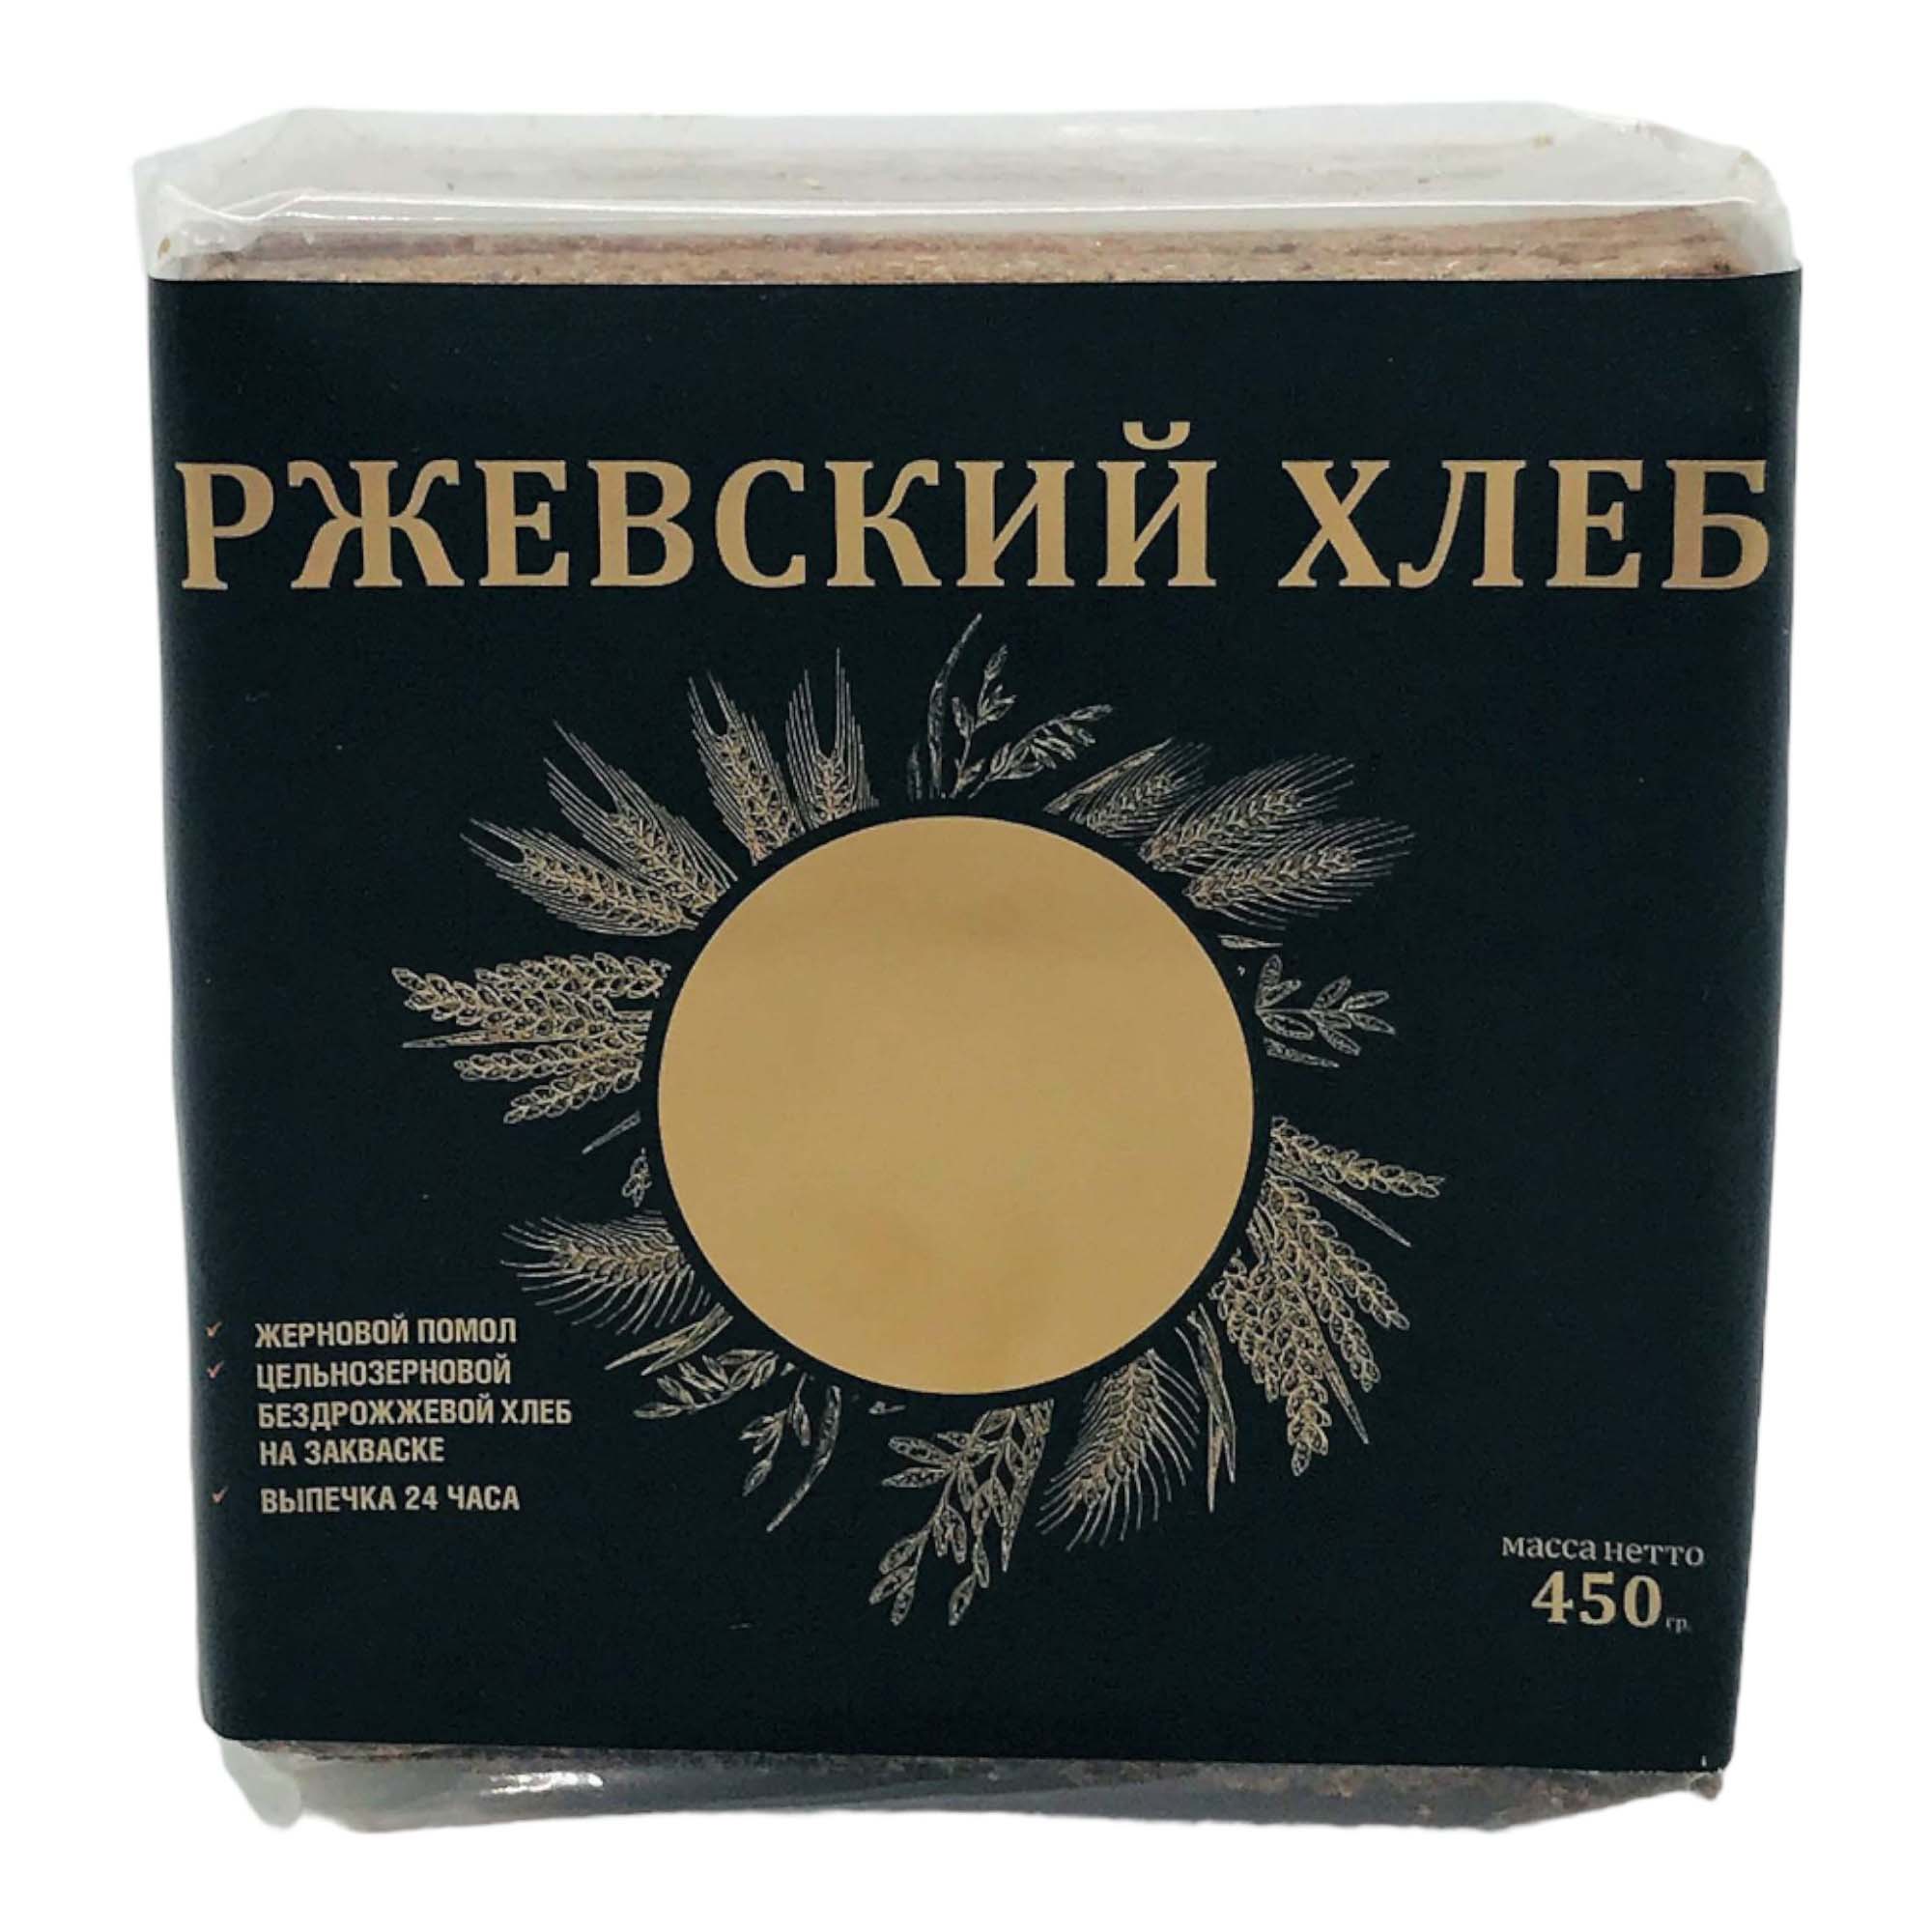 Хлеб Спортхлеб Ржевский ржано-пшеничный бездрожжевой в нарезке 450 г